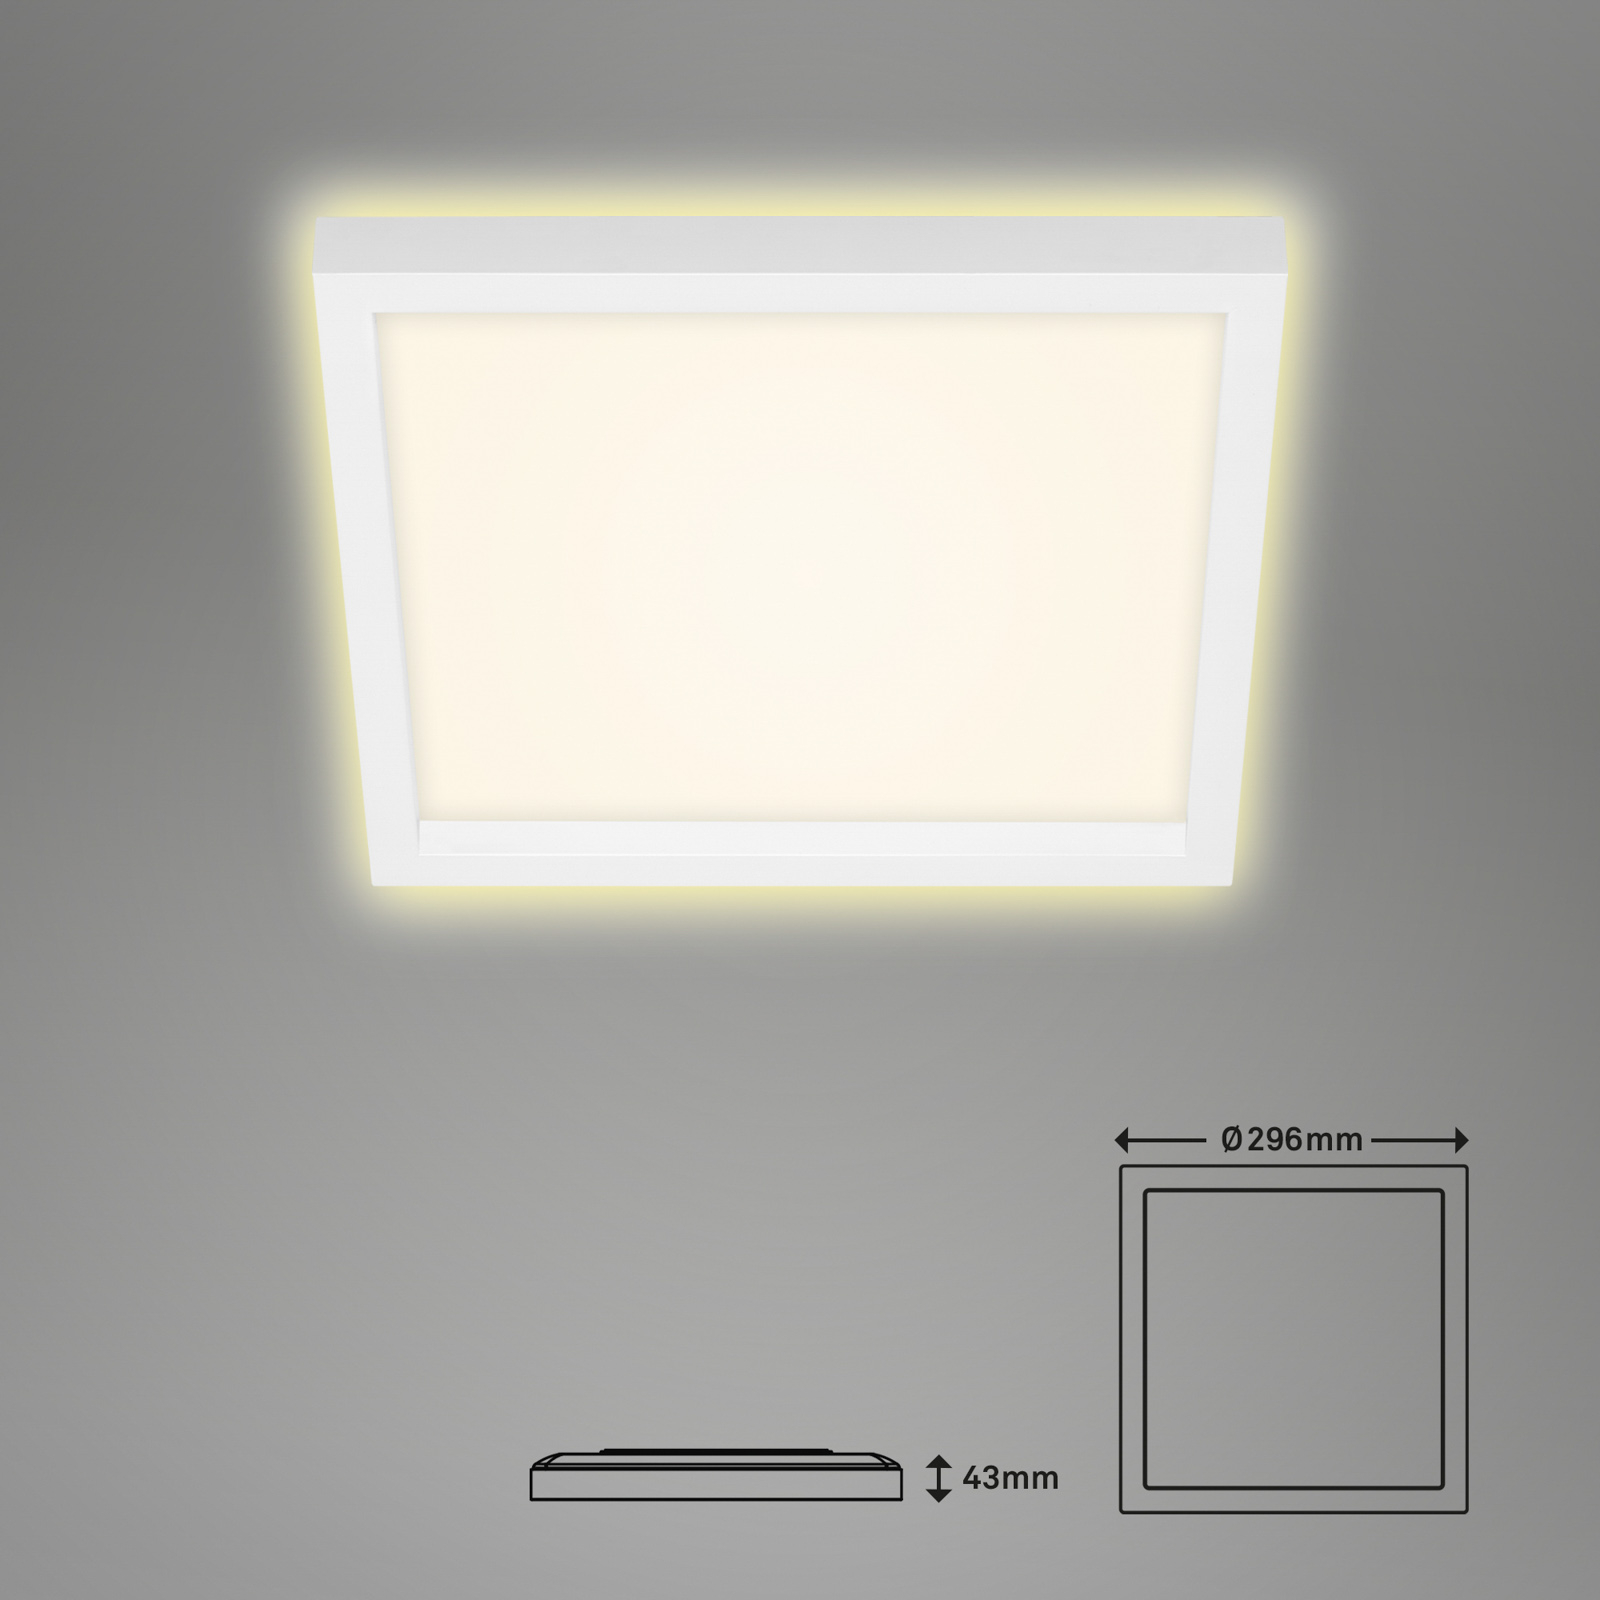 LED-Deckenlampe 7362, 29 x 29 cm, weiß